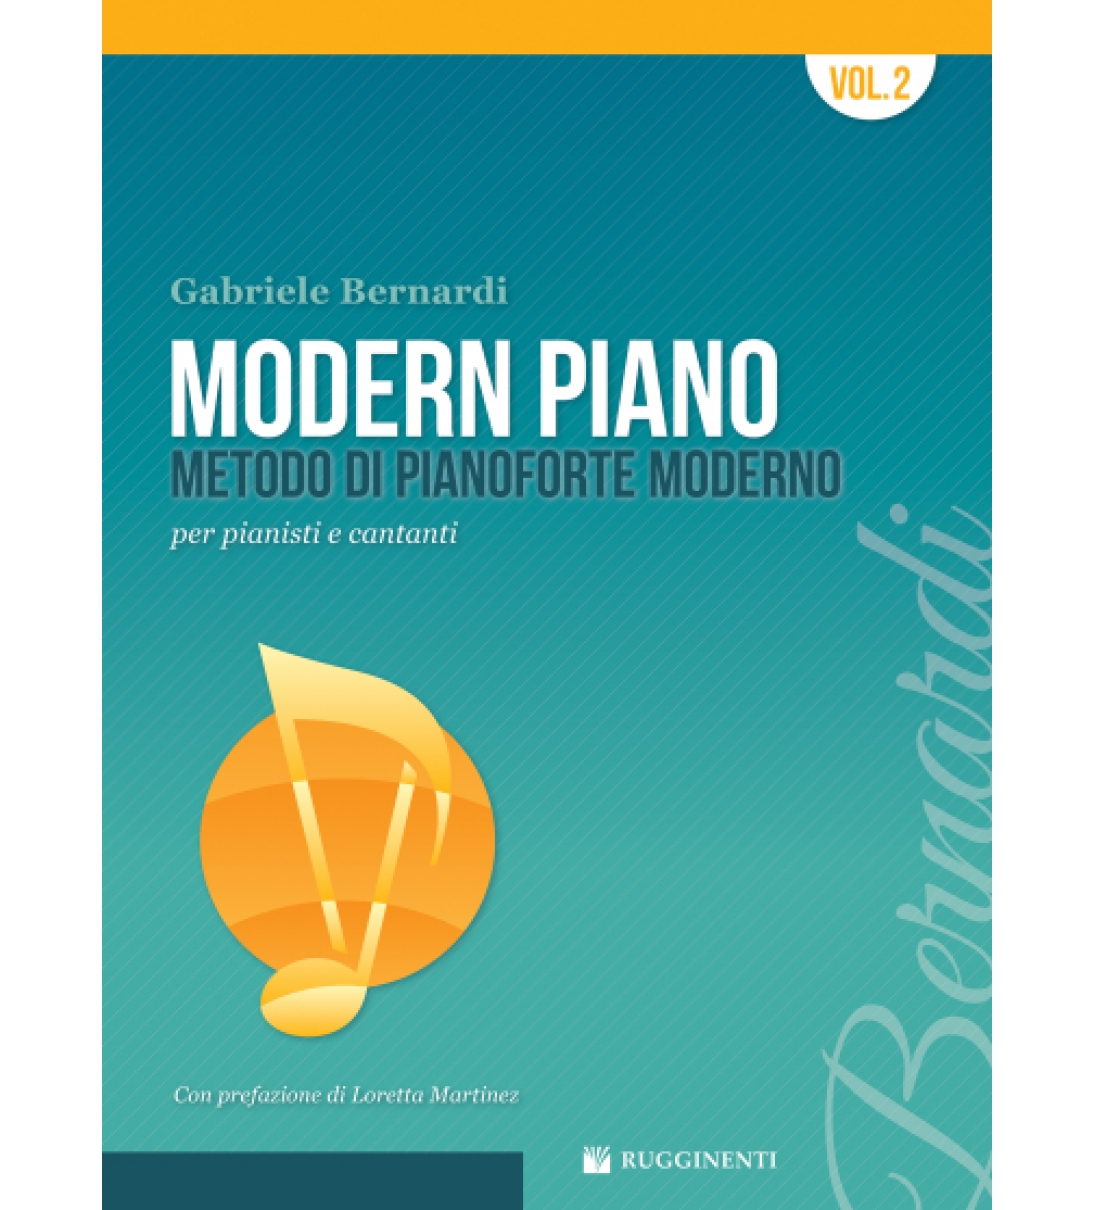 MODERN PIANO - Metodo di Pianoforte Moderno vol. 2